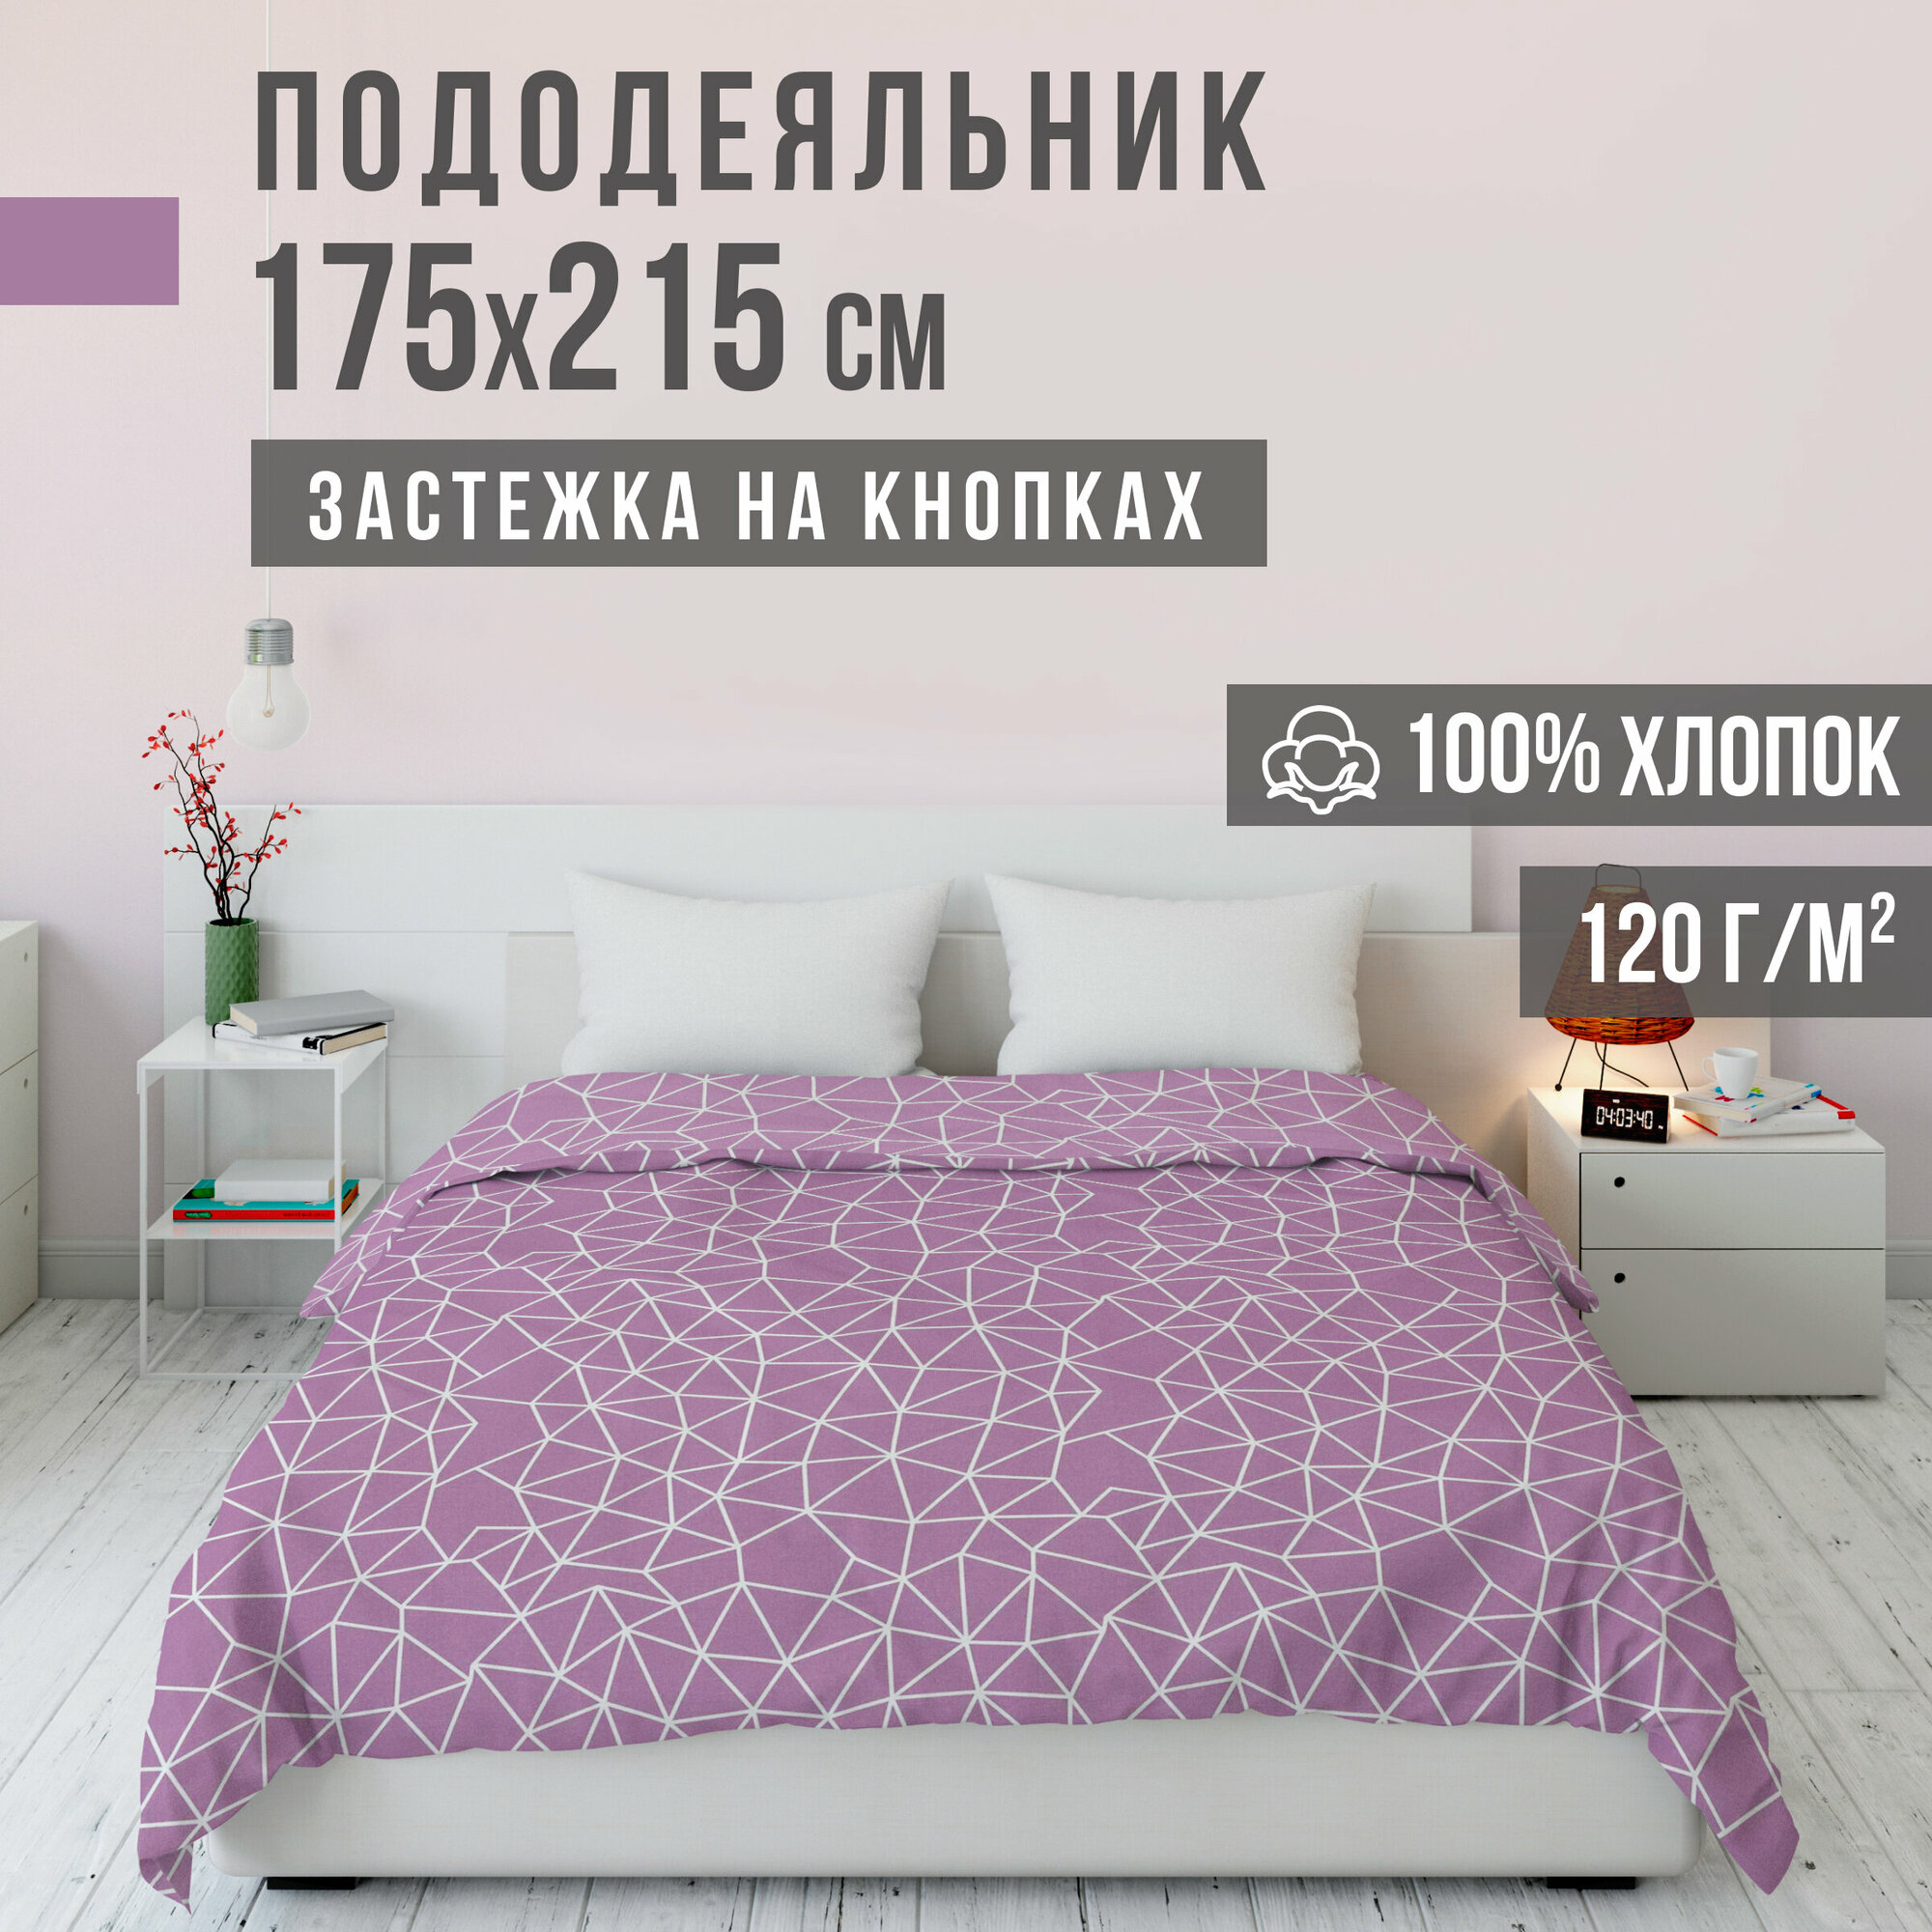 Пододеяльник, 2 спальный, ранфорс, 100% хлопок, VENTURA LIFE 175х215 см, Розовые грани